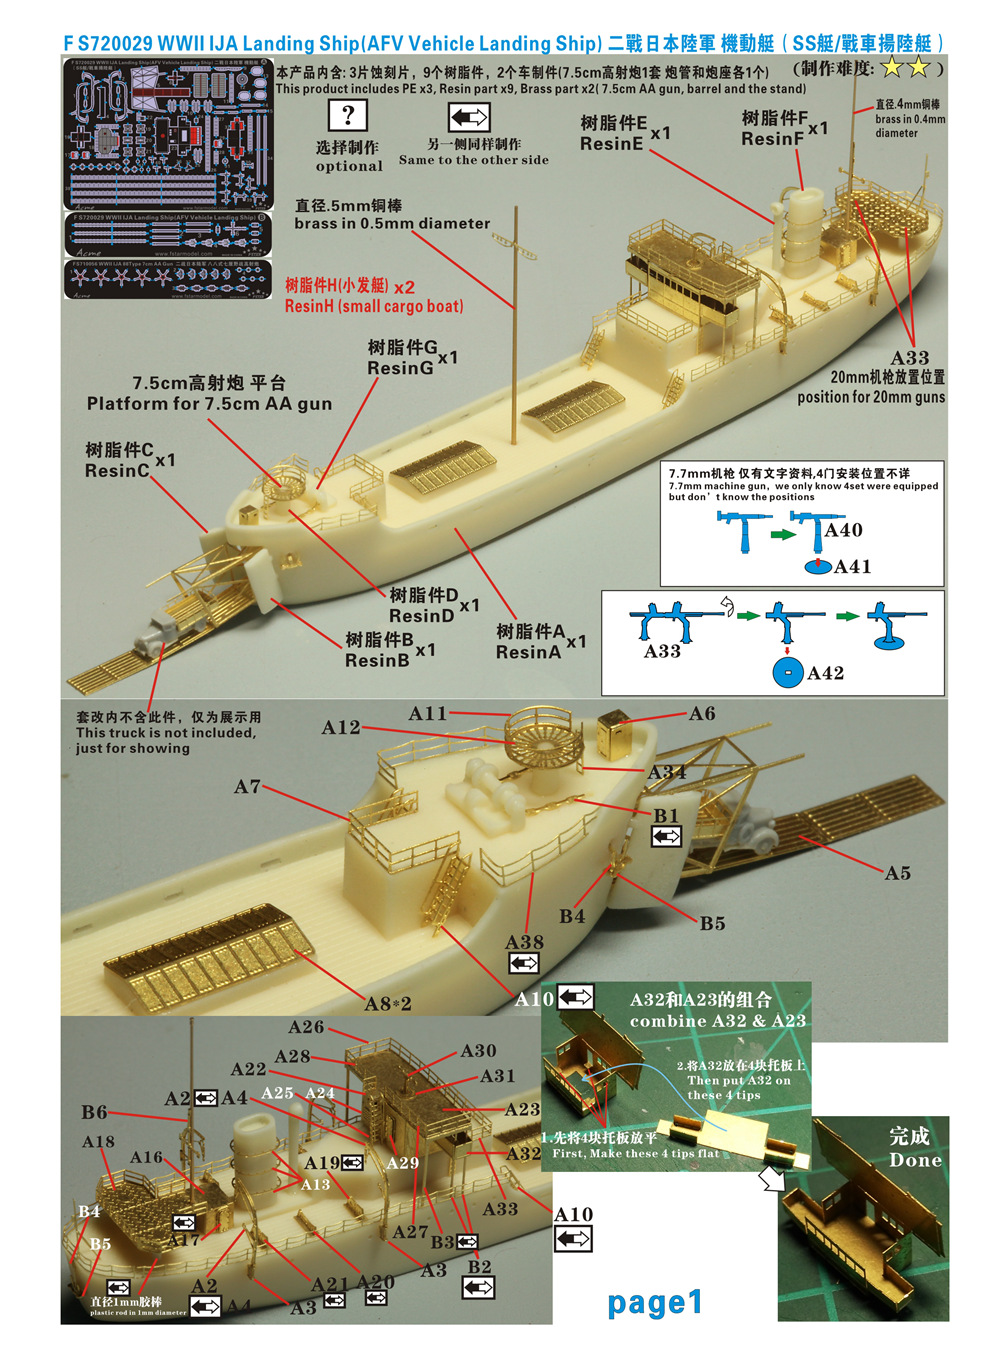 1/700 二战日本陆军机动艇(战车扬陆艇)树脂模型套件 - 点击图像关闭